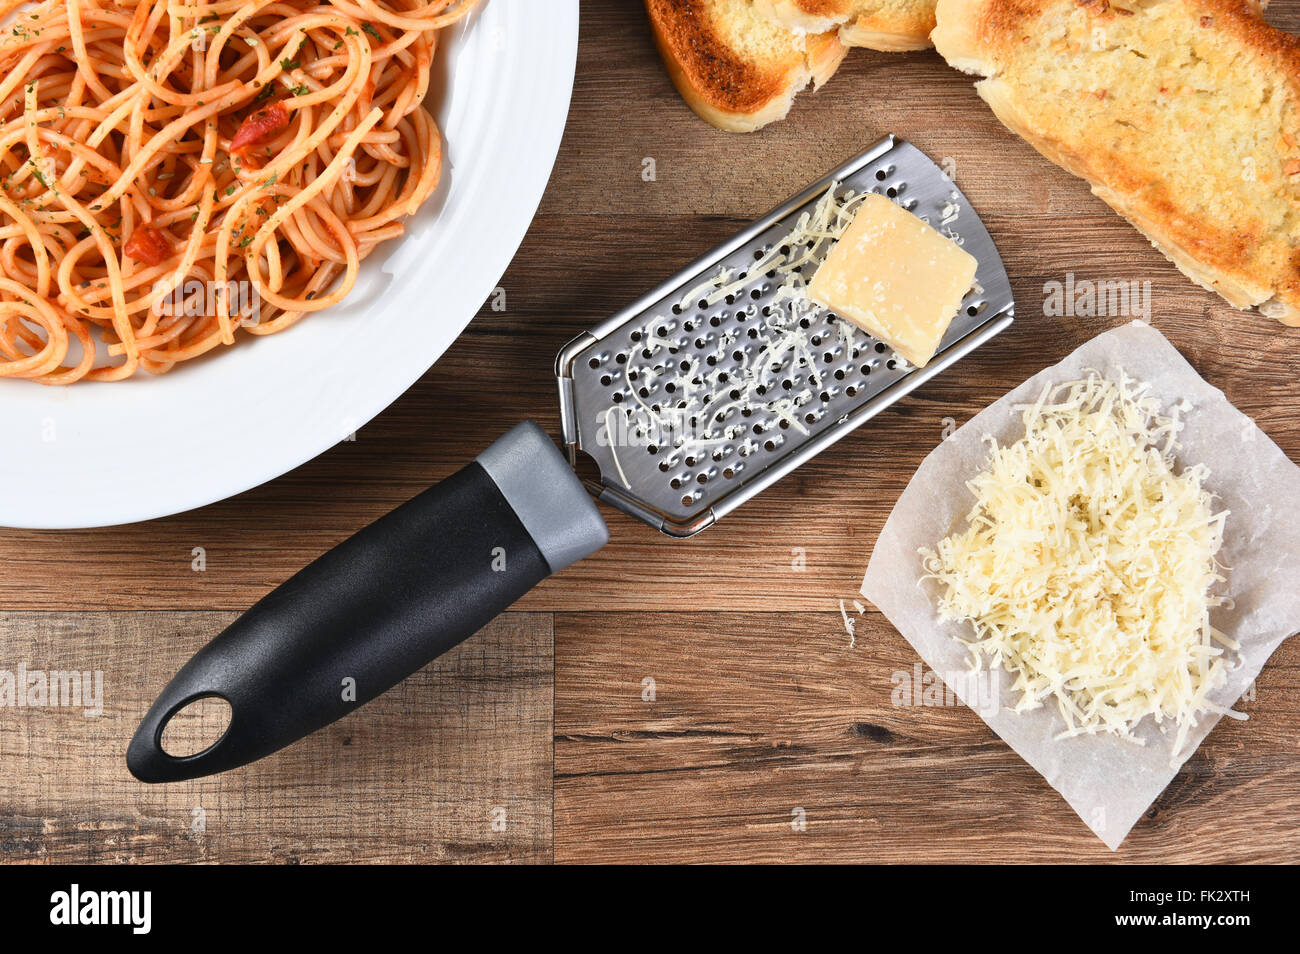 Erhöhte Ansicht einer Käse reiben mit Parmesan-Käse auf einem rustikalen Holz Küchentisch. Einen Teller mit Spaghetti und Knoblauch Brot ar Stockfoto